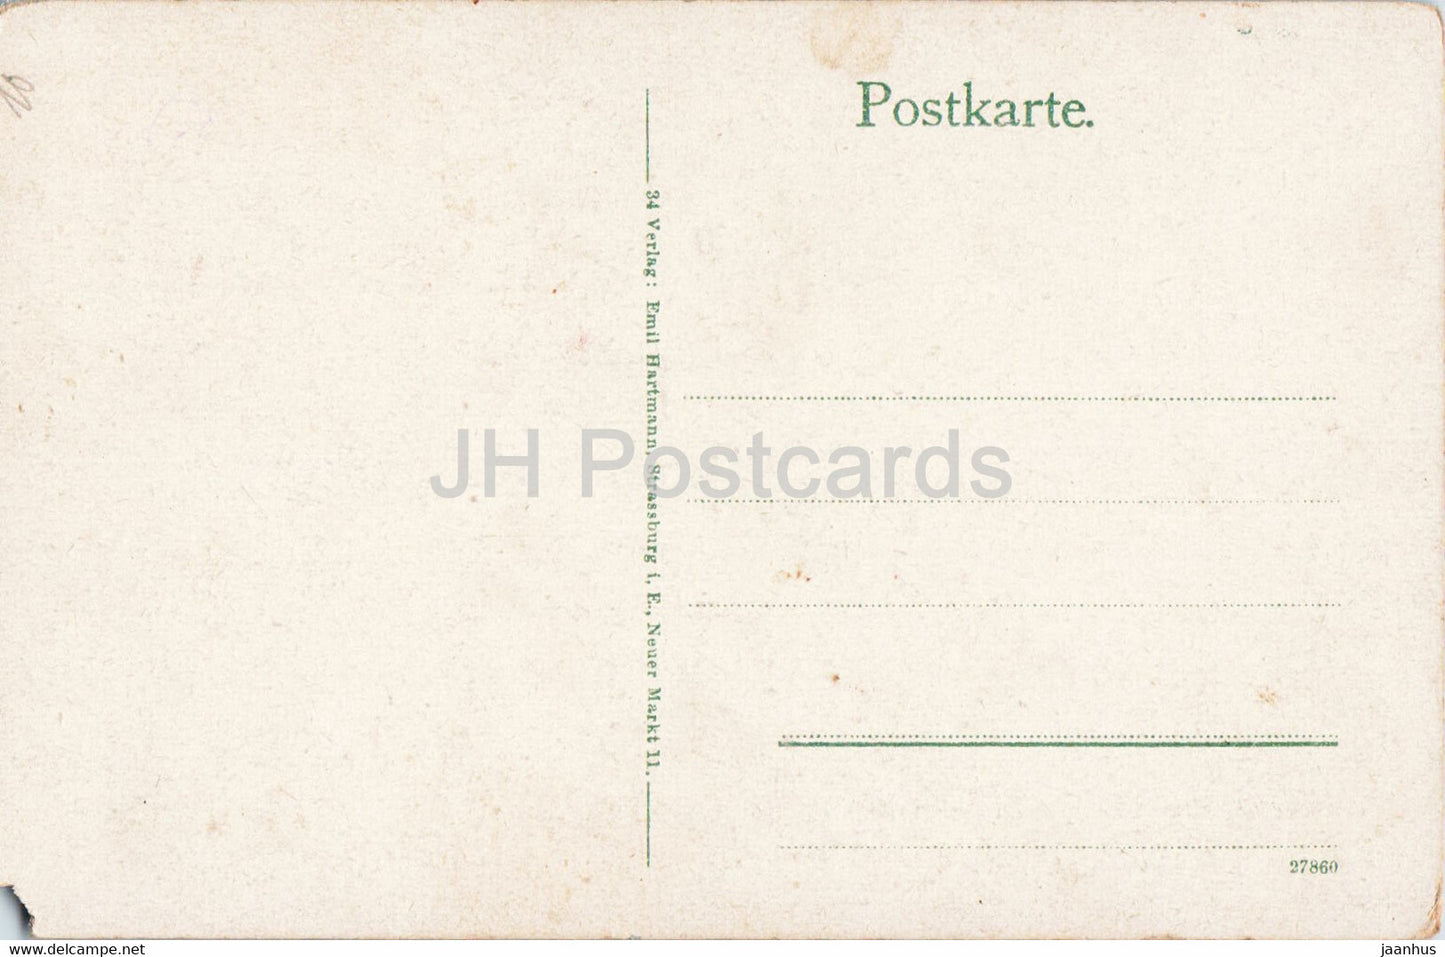 Weisser See 1200 m - Hochvogesen - old postcard - France - unused